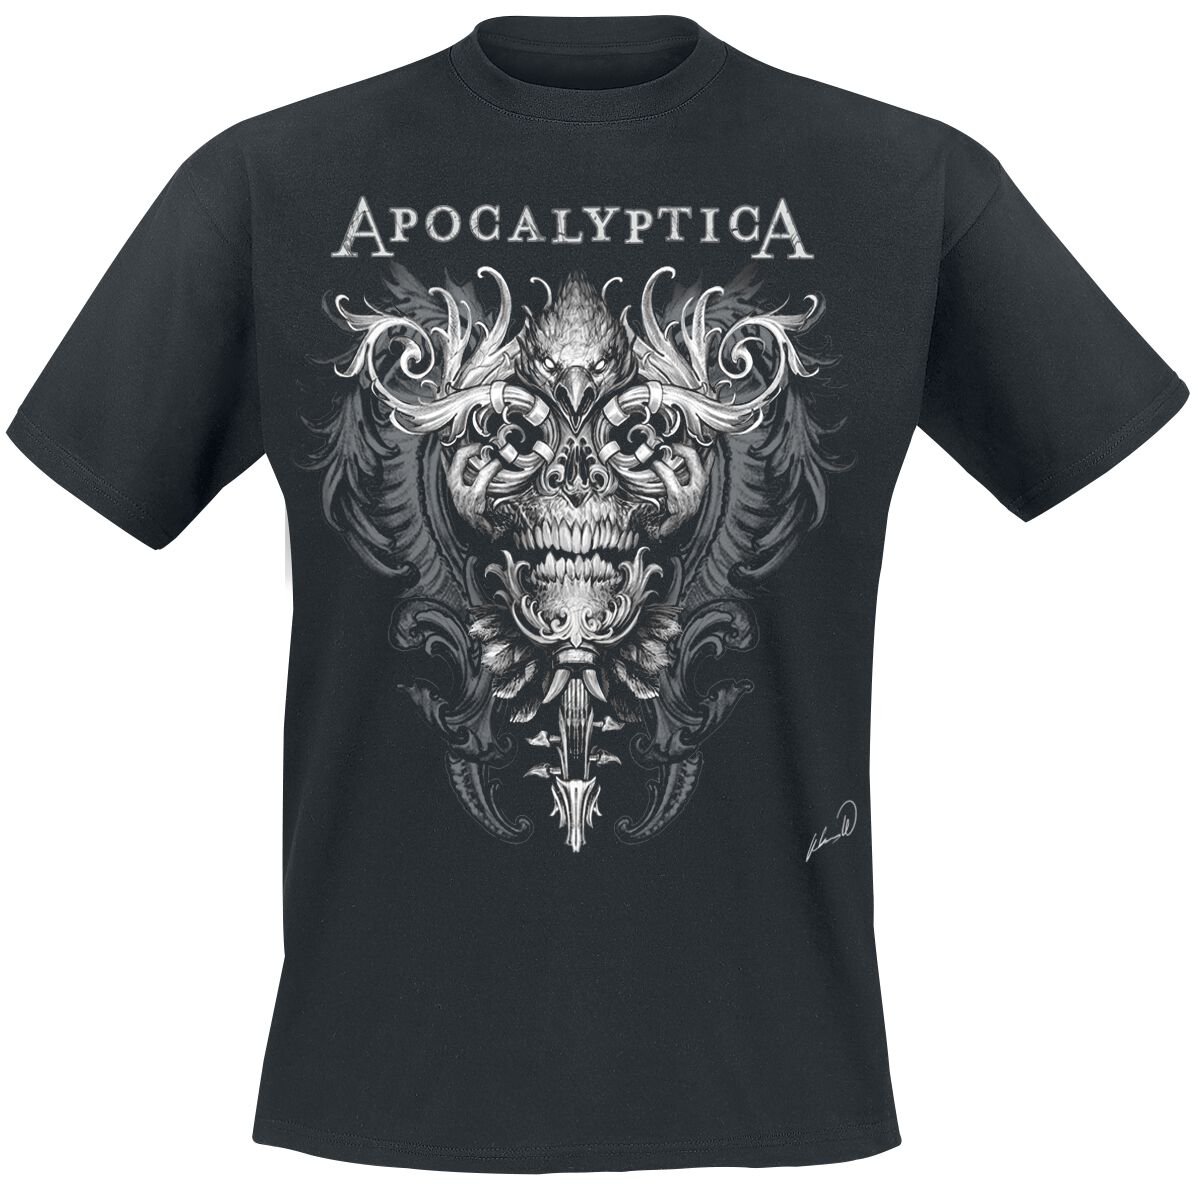 Apocalyptica T-Shirt - Mayhem - S bis 5XL - für Männer - Größe 5XL - schwarz  - Lizenziertes Merchandise!